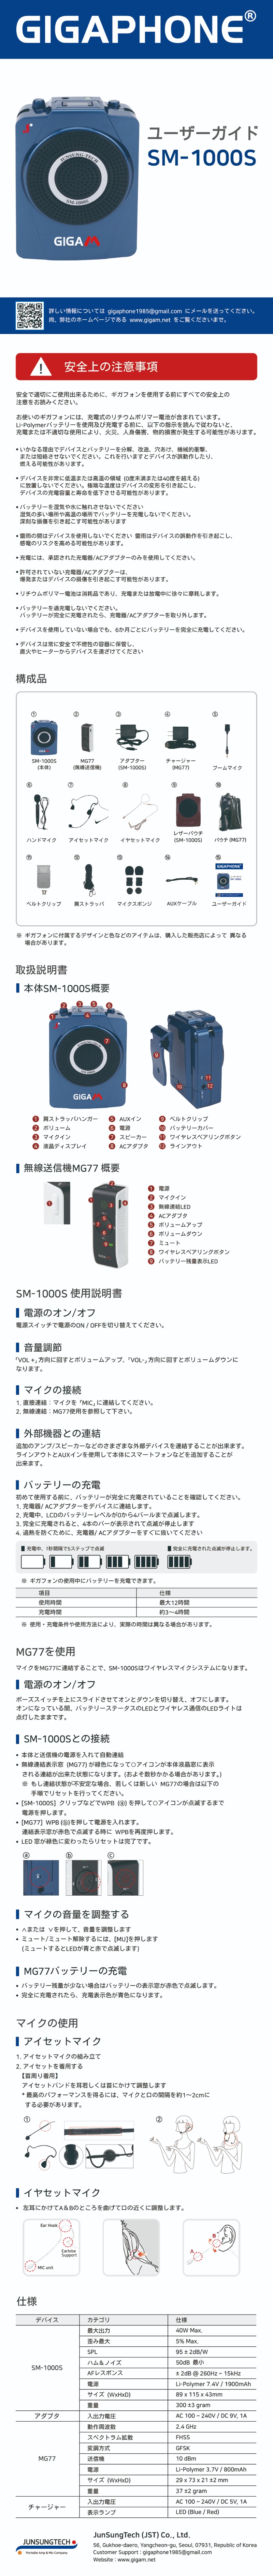 SM-1000S_m_JP.jpg